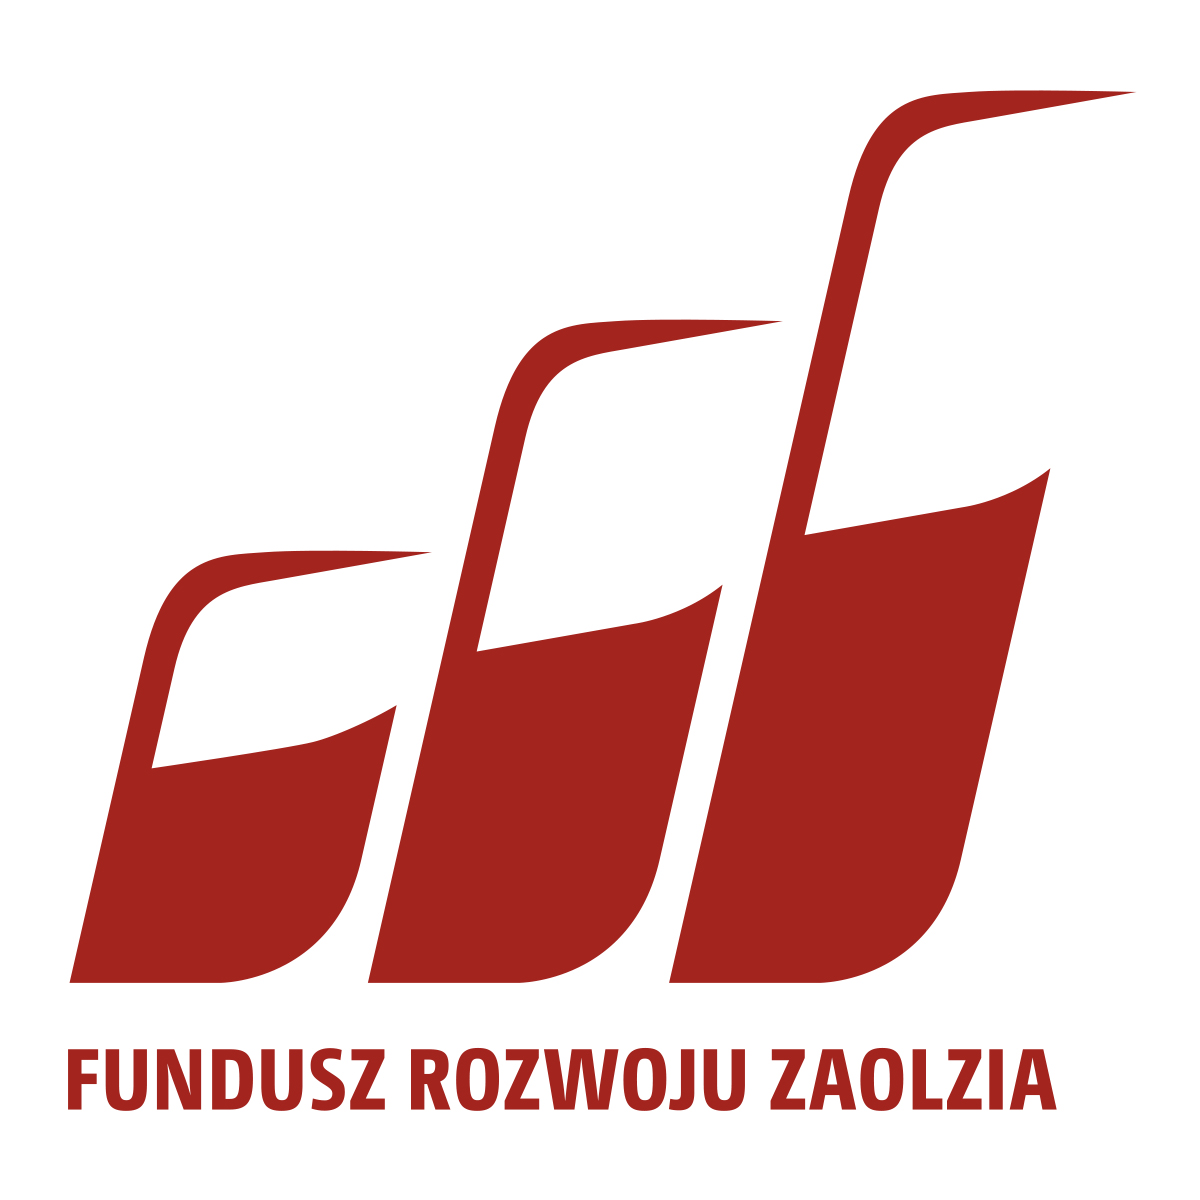 Ext. Fundusz Rozwoju Zaolzia